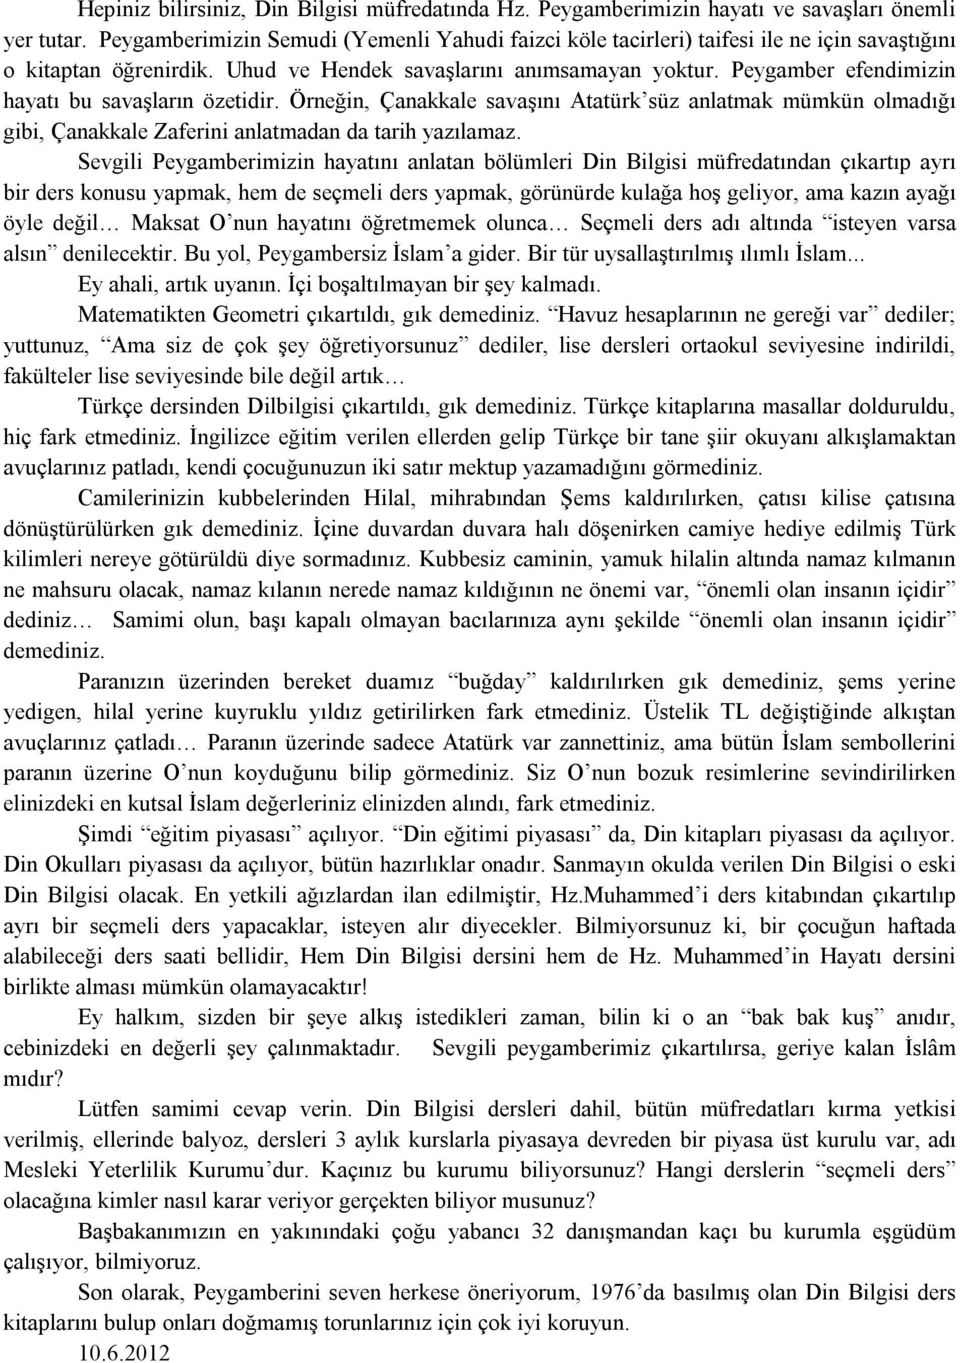 Peygamber efendimizin hayatı bu savaşların özetidir. Örneğin, Çanakkale savaşını Atatürk süz anlatmak mümkün olmadığı gibi, Çanakkale Zaferini anlatmadan da tarih yazılamaz.